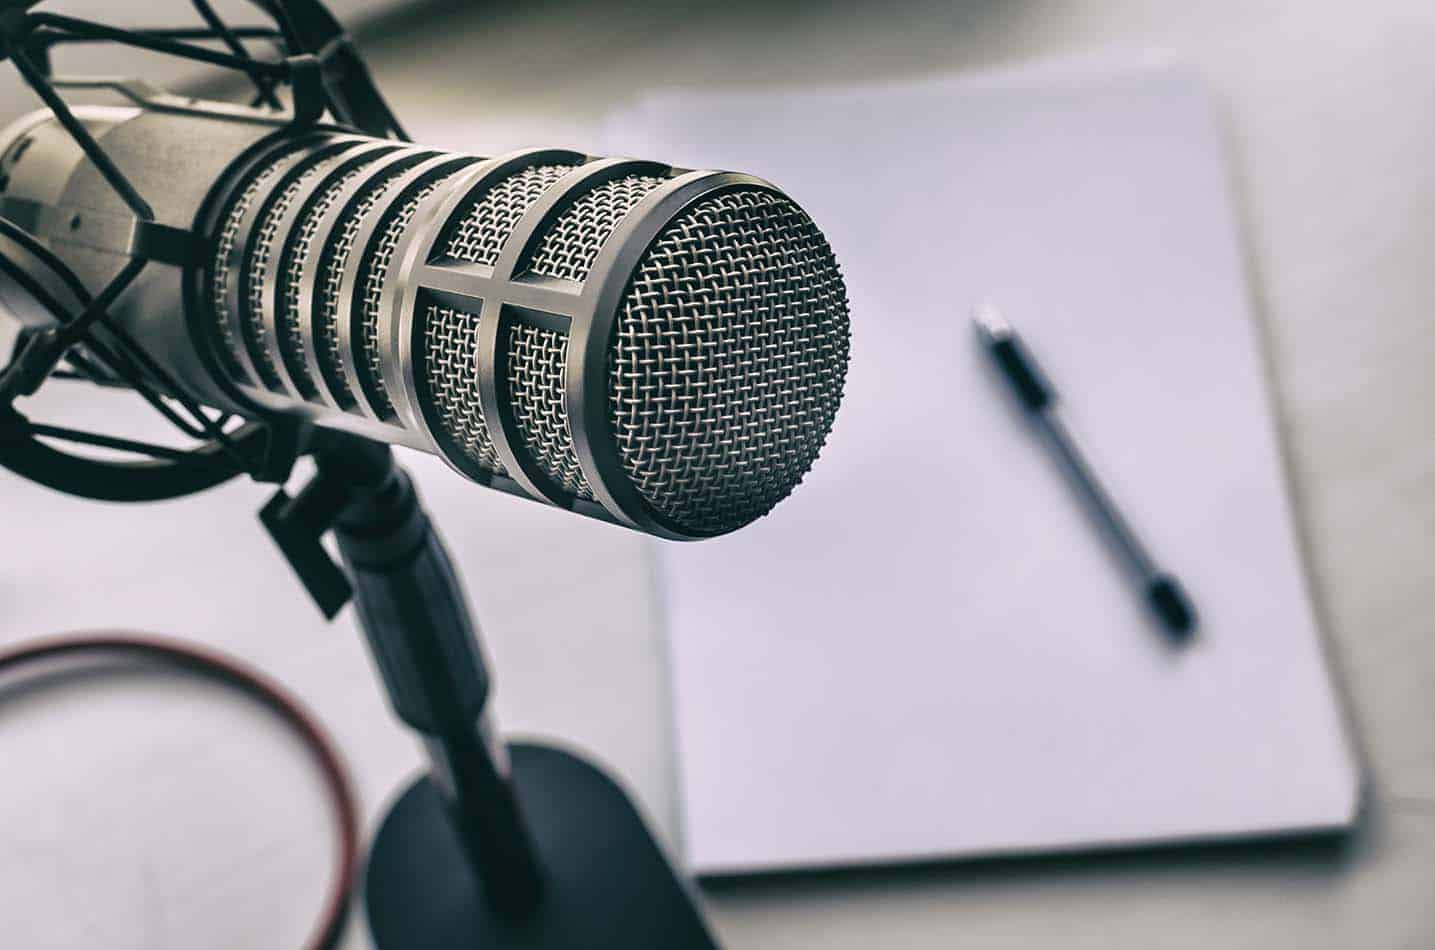 Een professionele microfoon in zilvergrijs. Op de achtergrond ligt een zwarte pen op een wit vel papier op een grijze tafel.